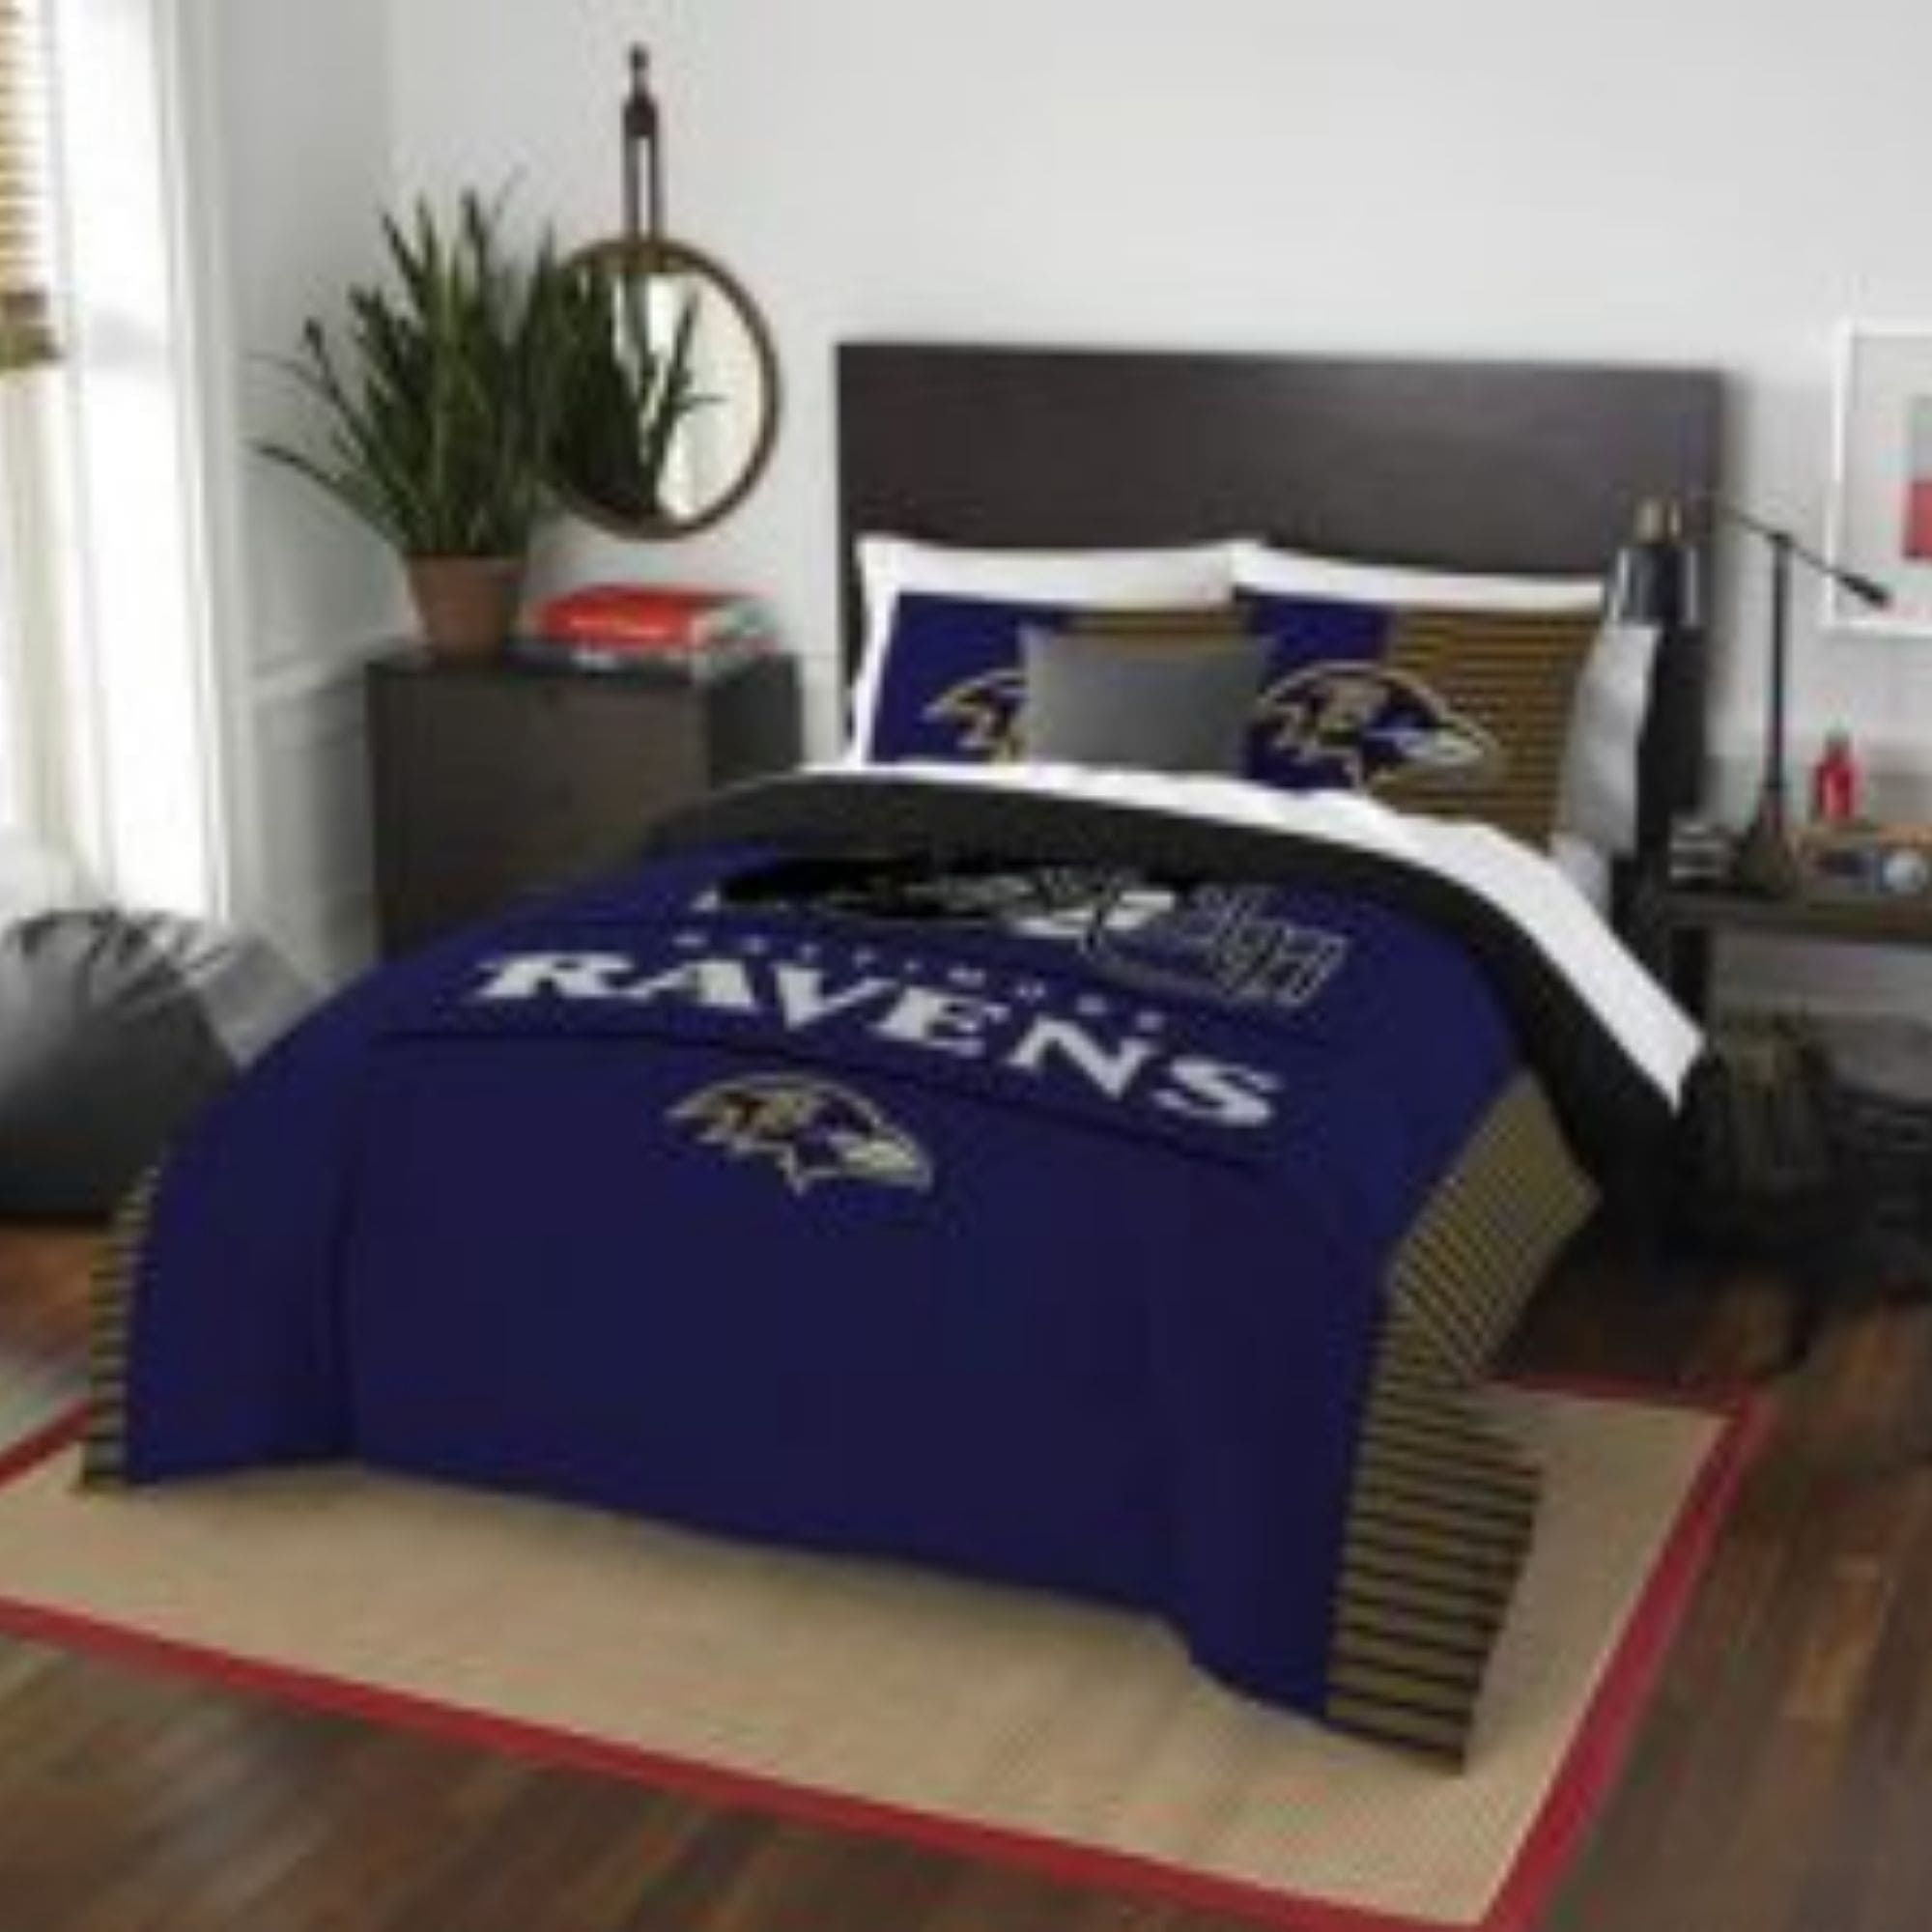 Baltimore Ravens Bed Set